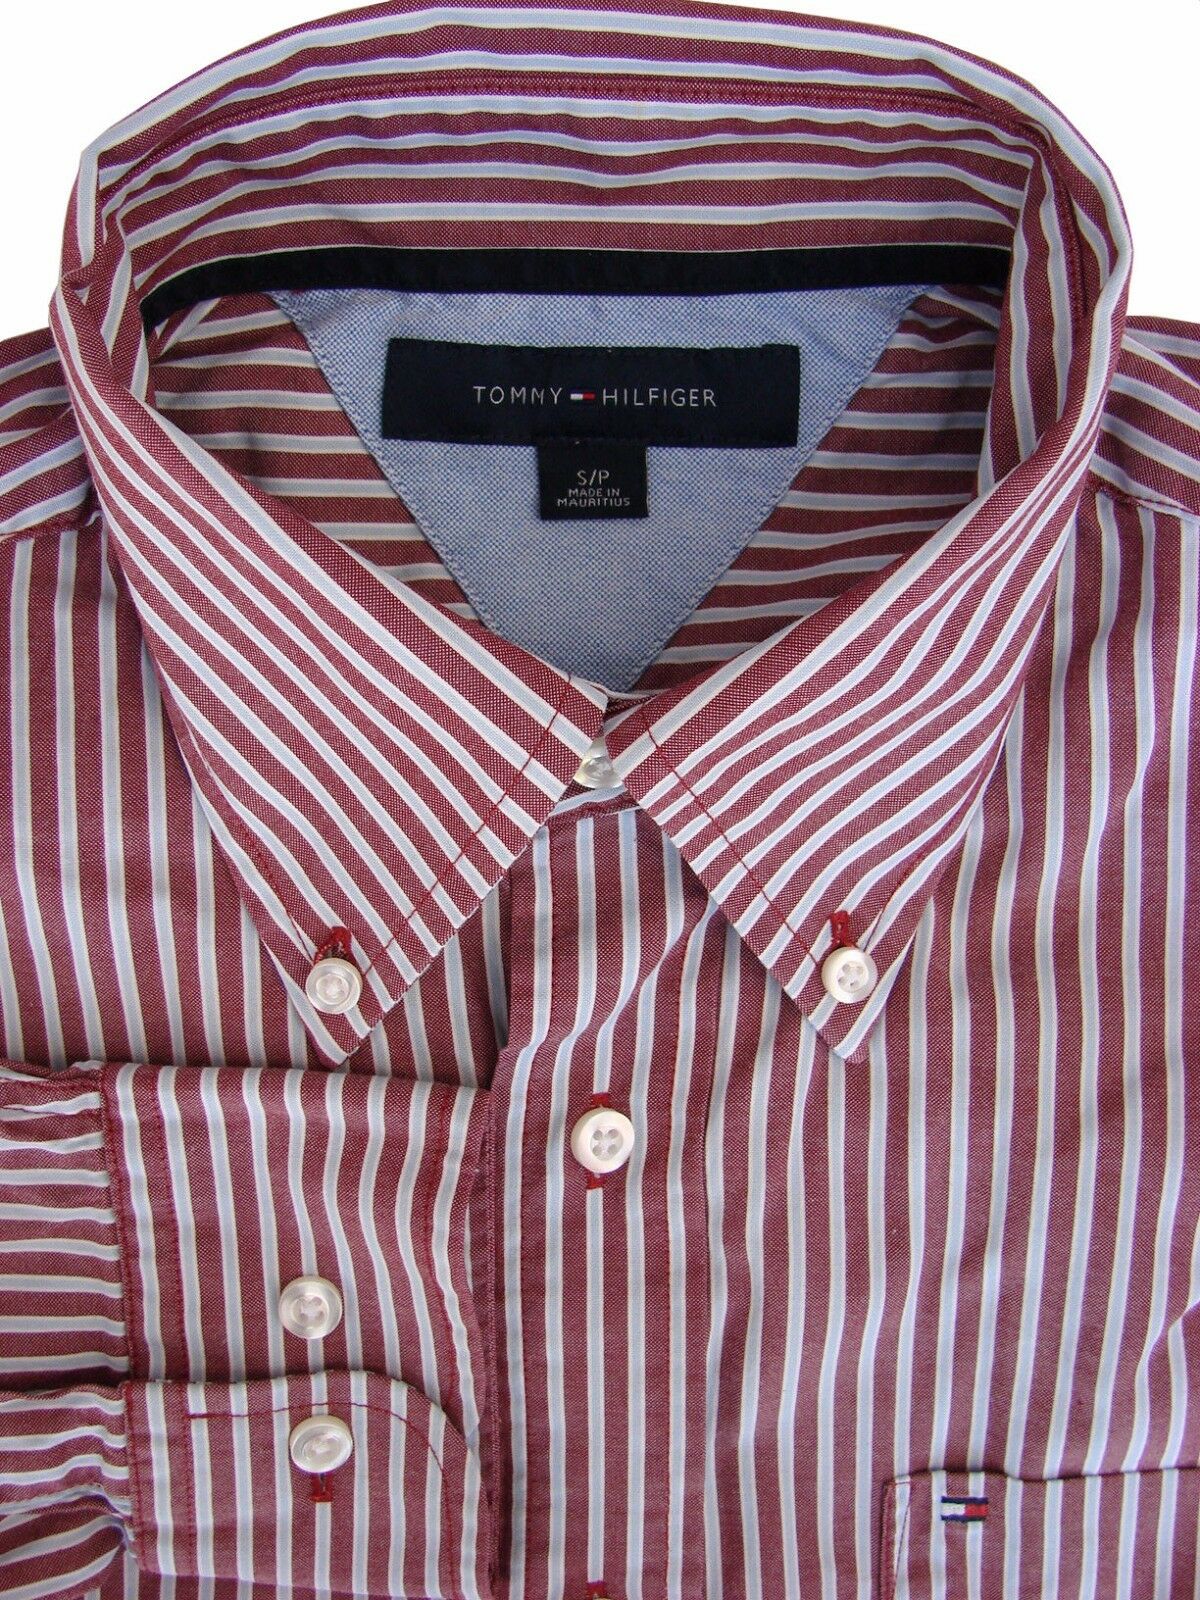 TOMMY HILFIGER Shirt Mens 15.5 M Brown – Light Blue Stripes